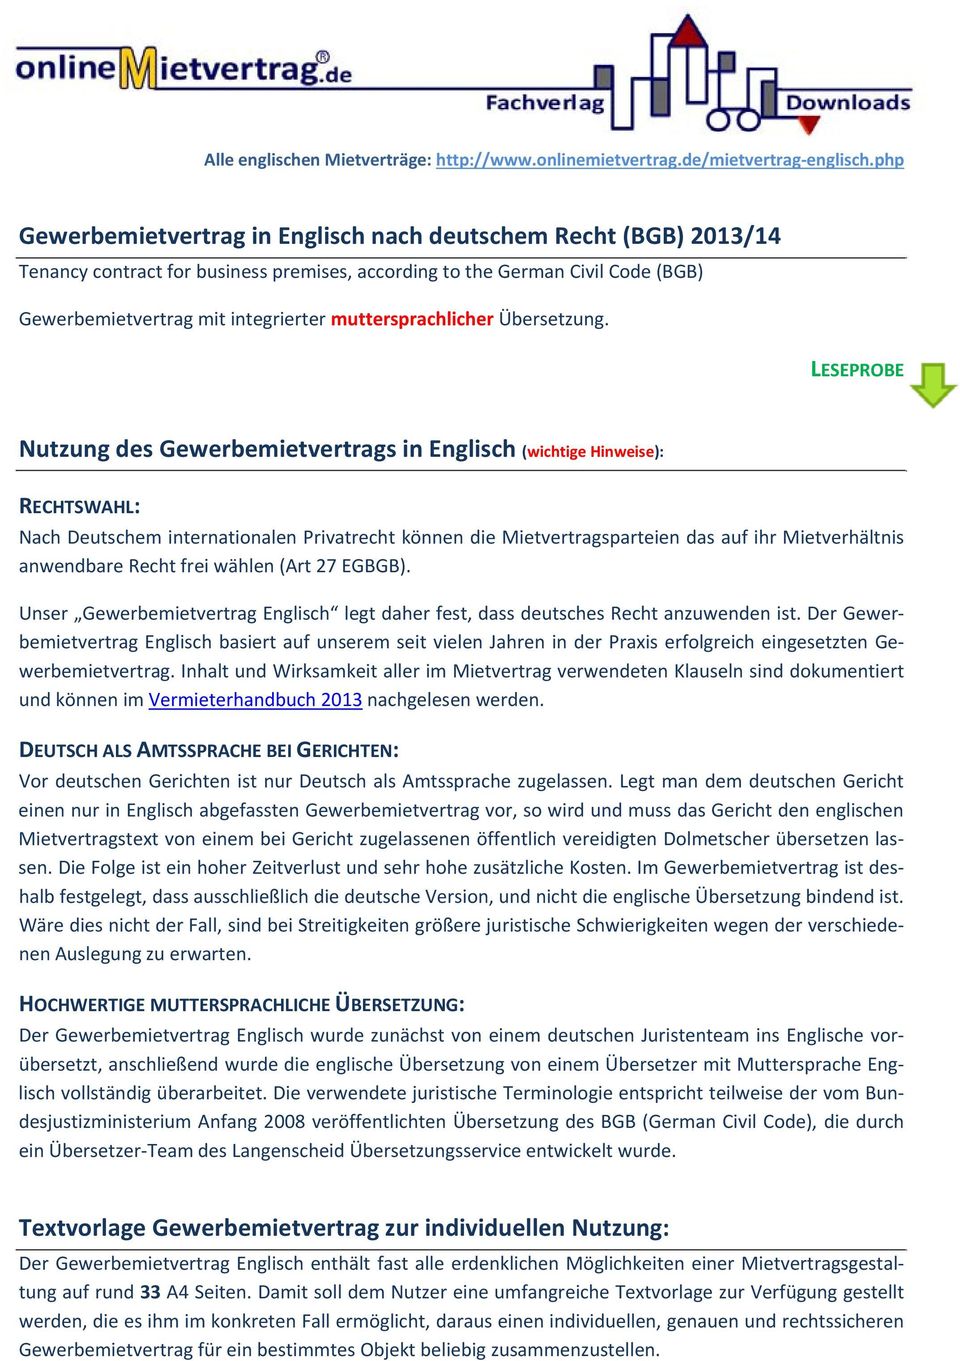 Gewerbemietvertrag In Englisch Nach Deutschem Recht Bgb 201314 Pdf